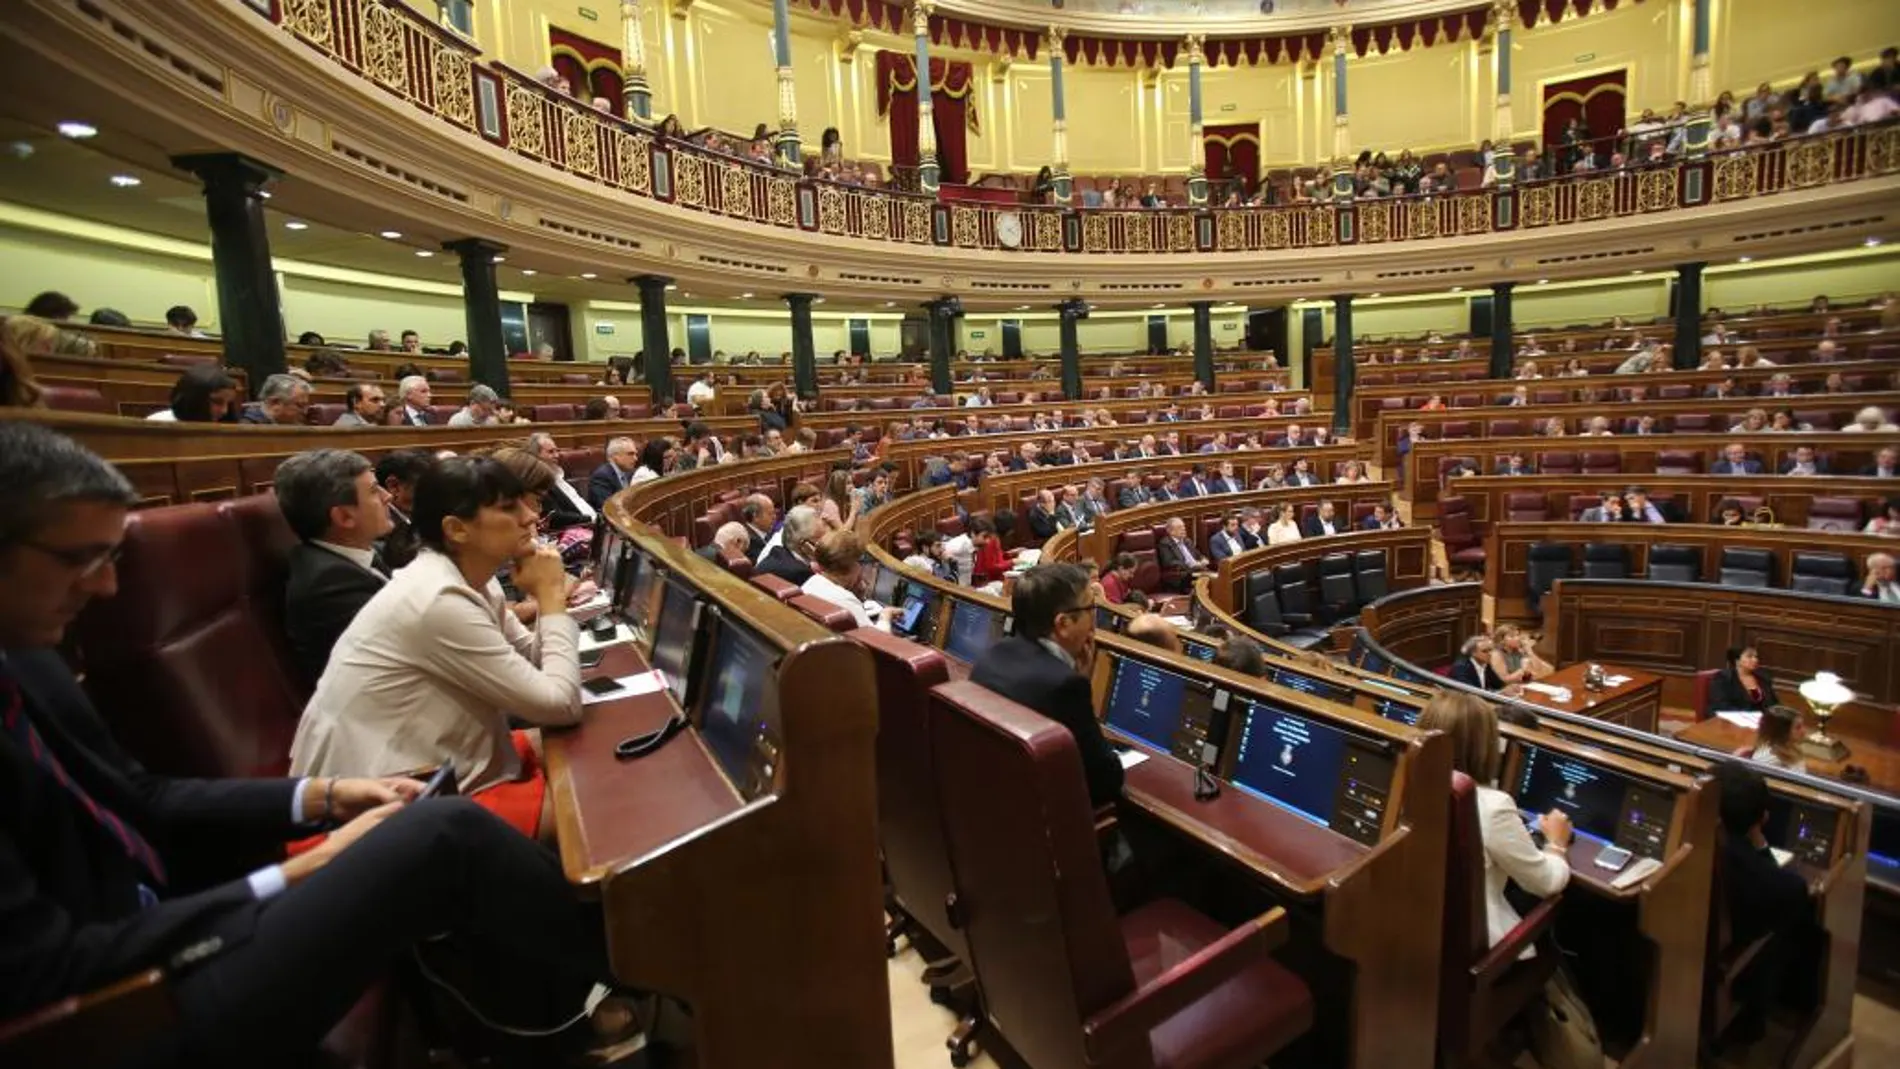 El próximo día 17 de noviembre se celebrará la Sesión de Apertura Solemne de la XII Legislatura en el Congreso de los Diputados